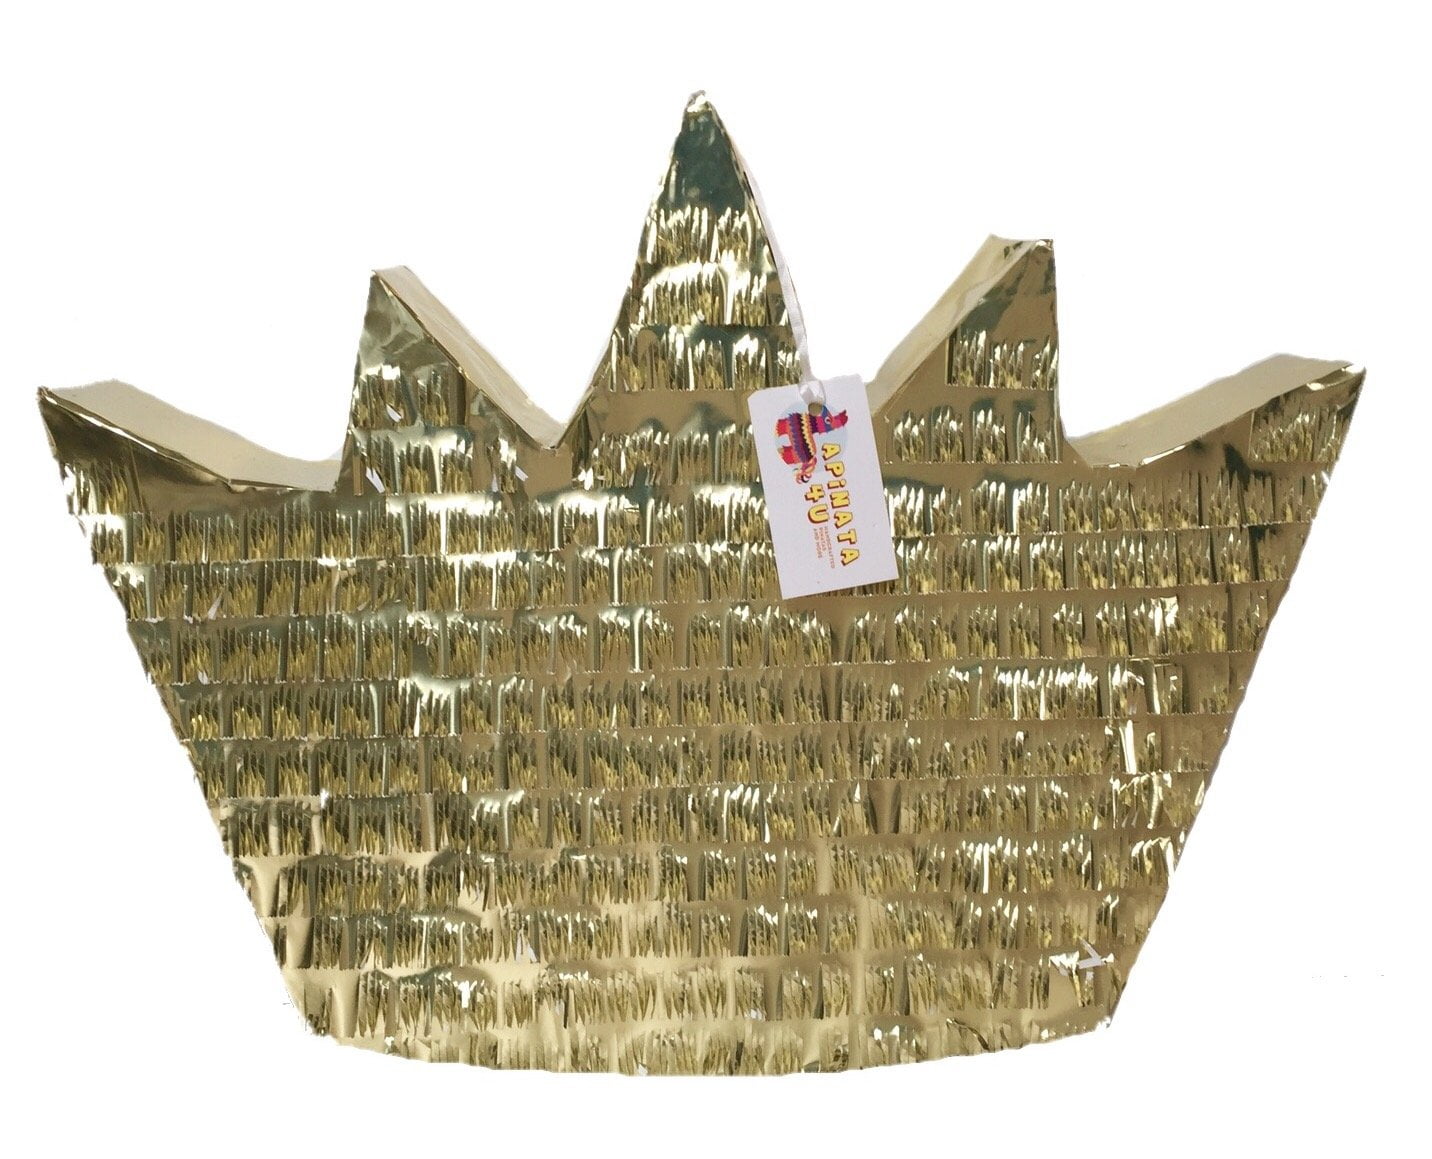 Buy APINATA4U Gold Crown Pinata at Walmart.com. 